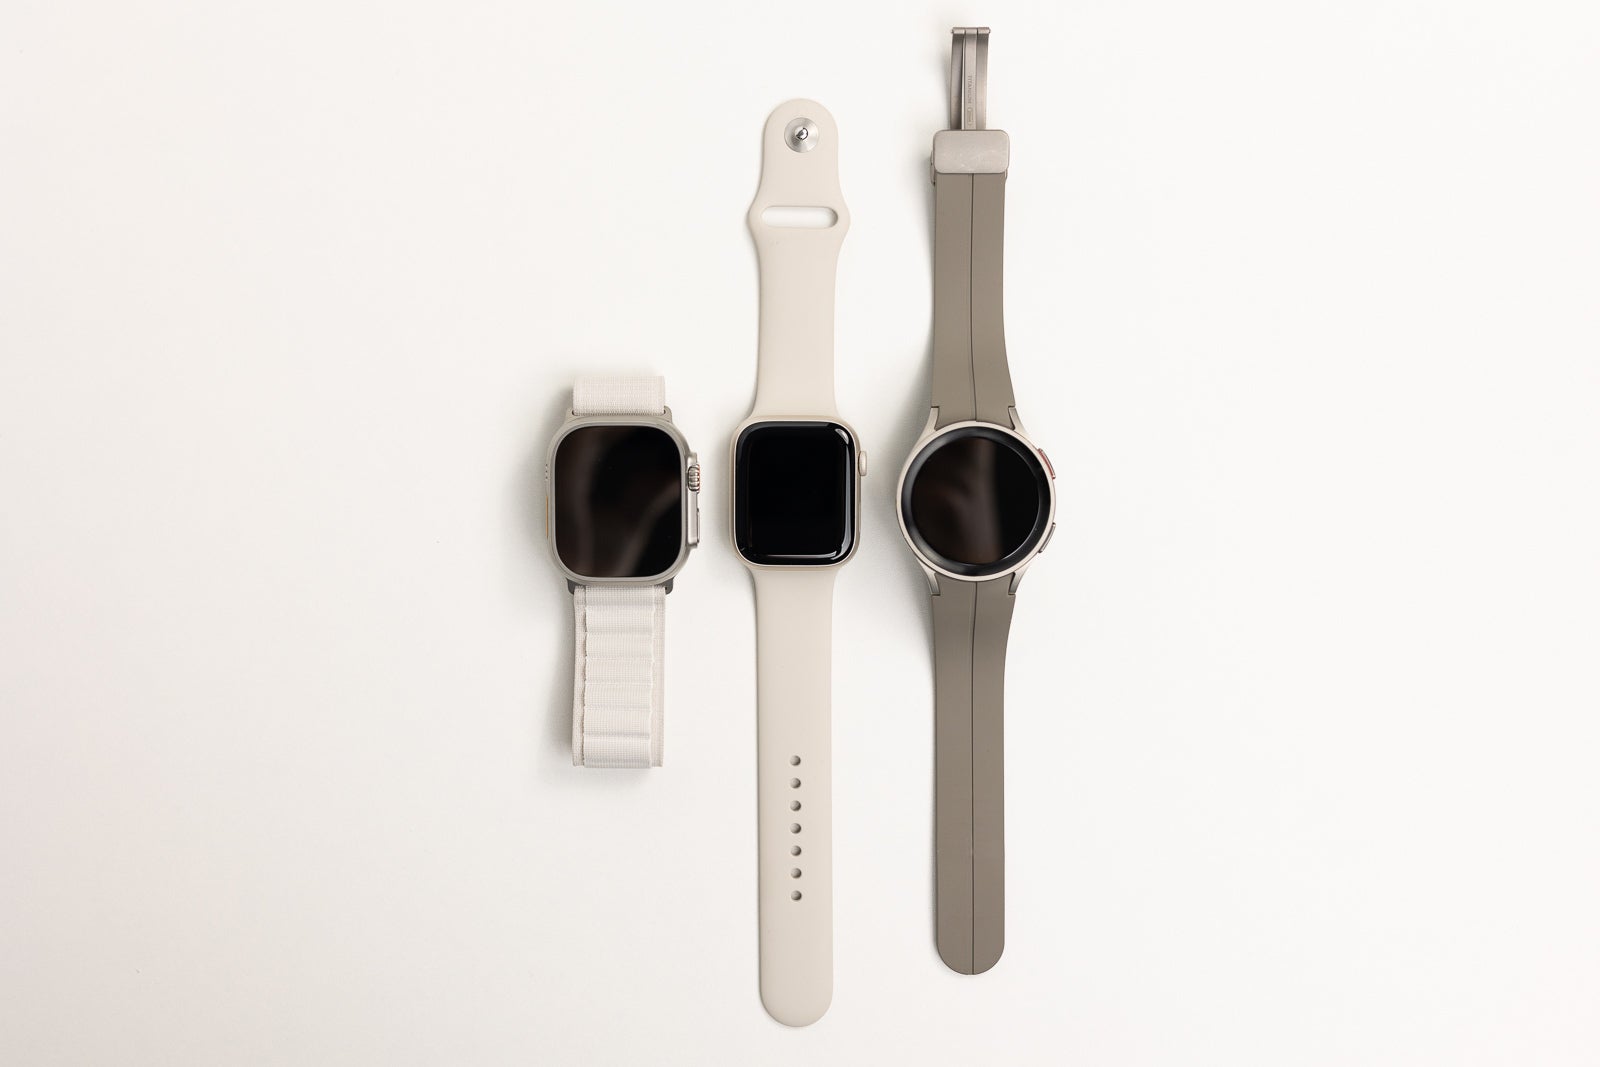 Apple Watch Ultra vs Apple Watch Series 8 vs Samsung Galaxy Watch 5 Pro comparaison de la taille avec les bandes - Comparaison de la taille de l'Apple Watch Ultra